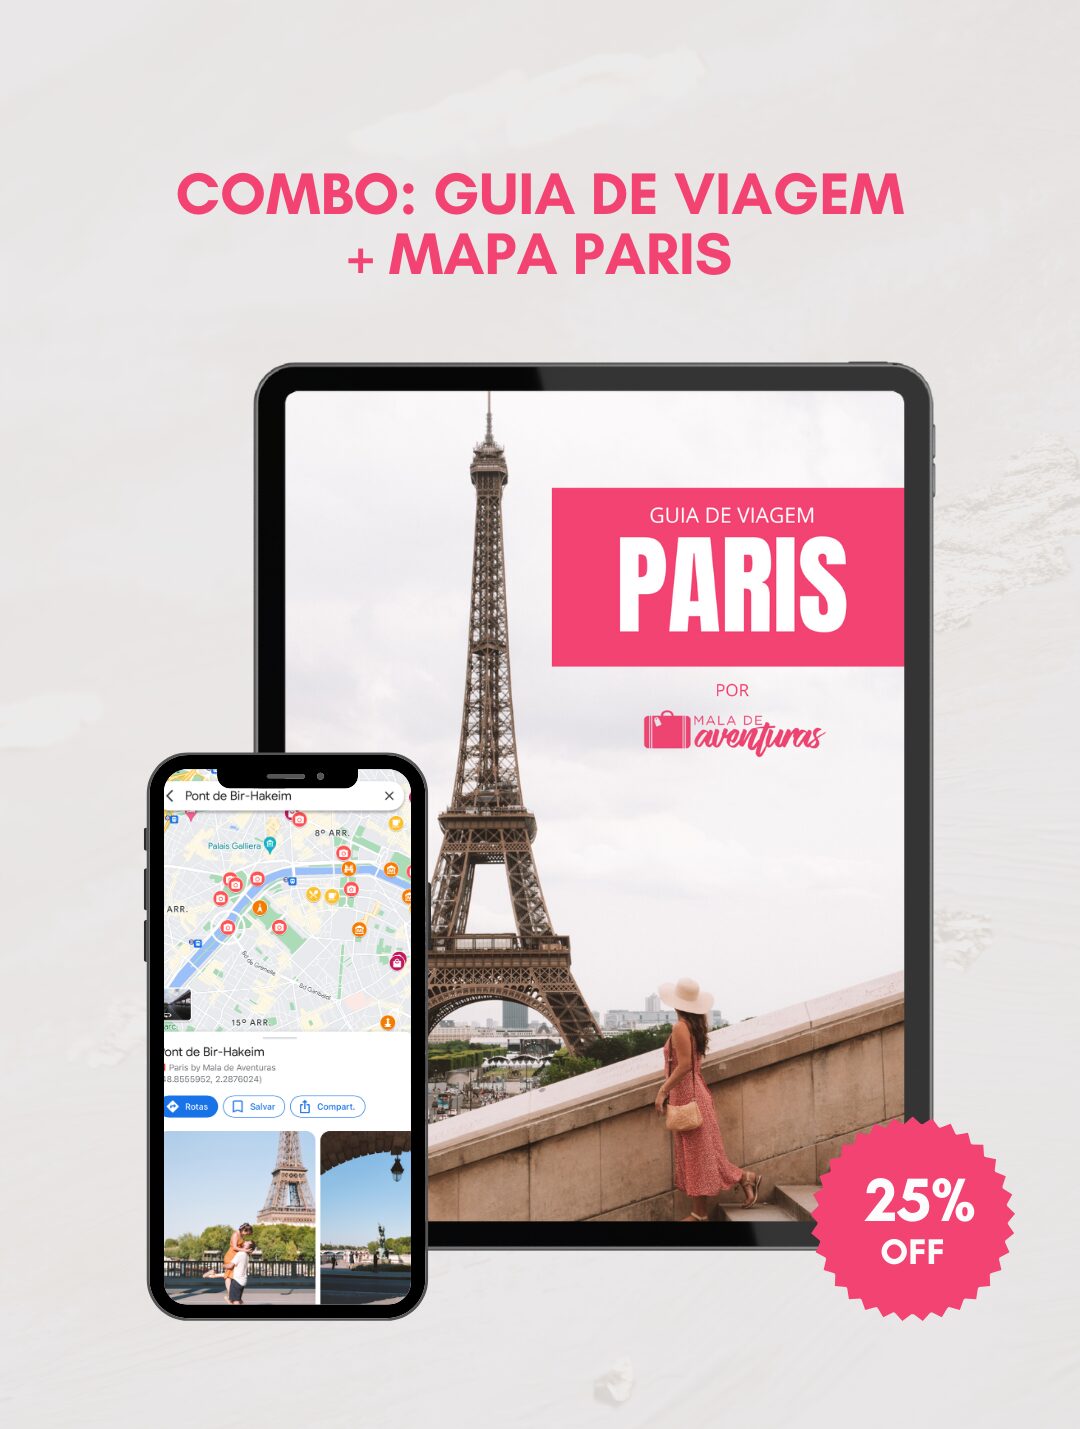 GUIA DE VIAGEM + MAPA PARIS – 25% OFF